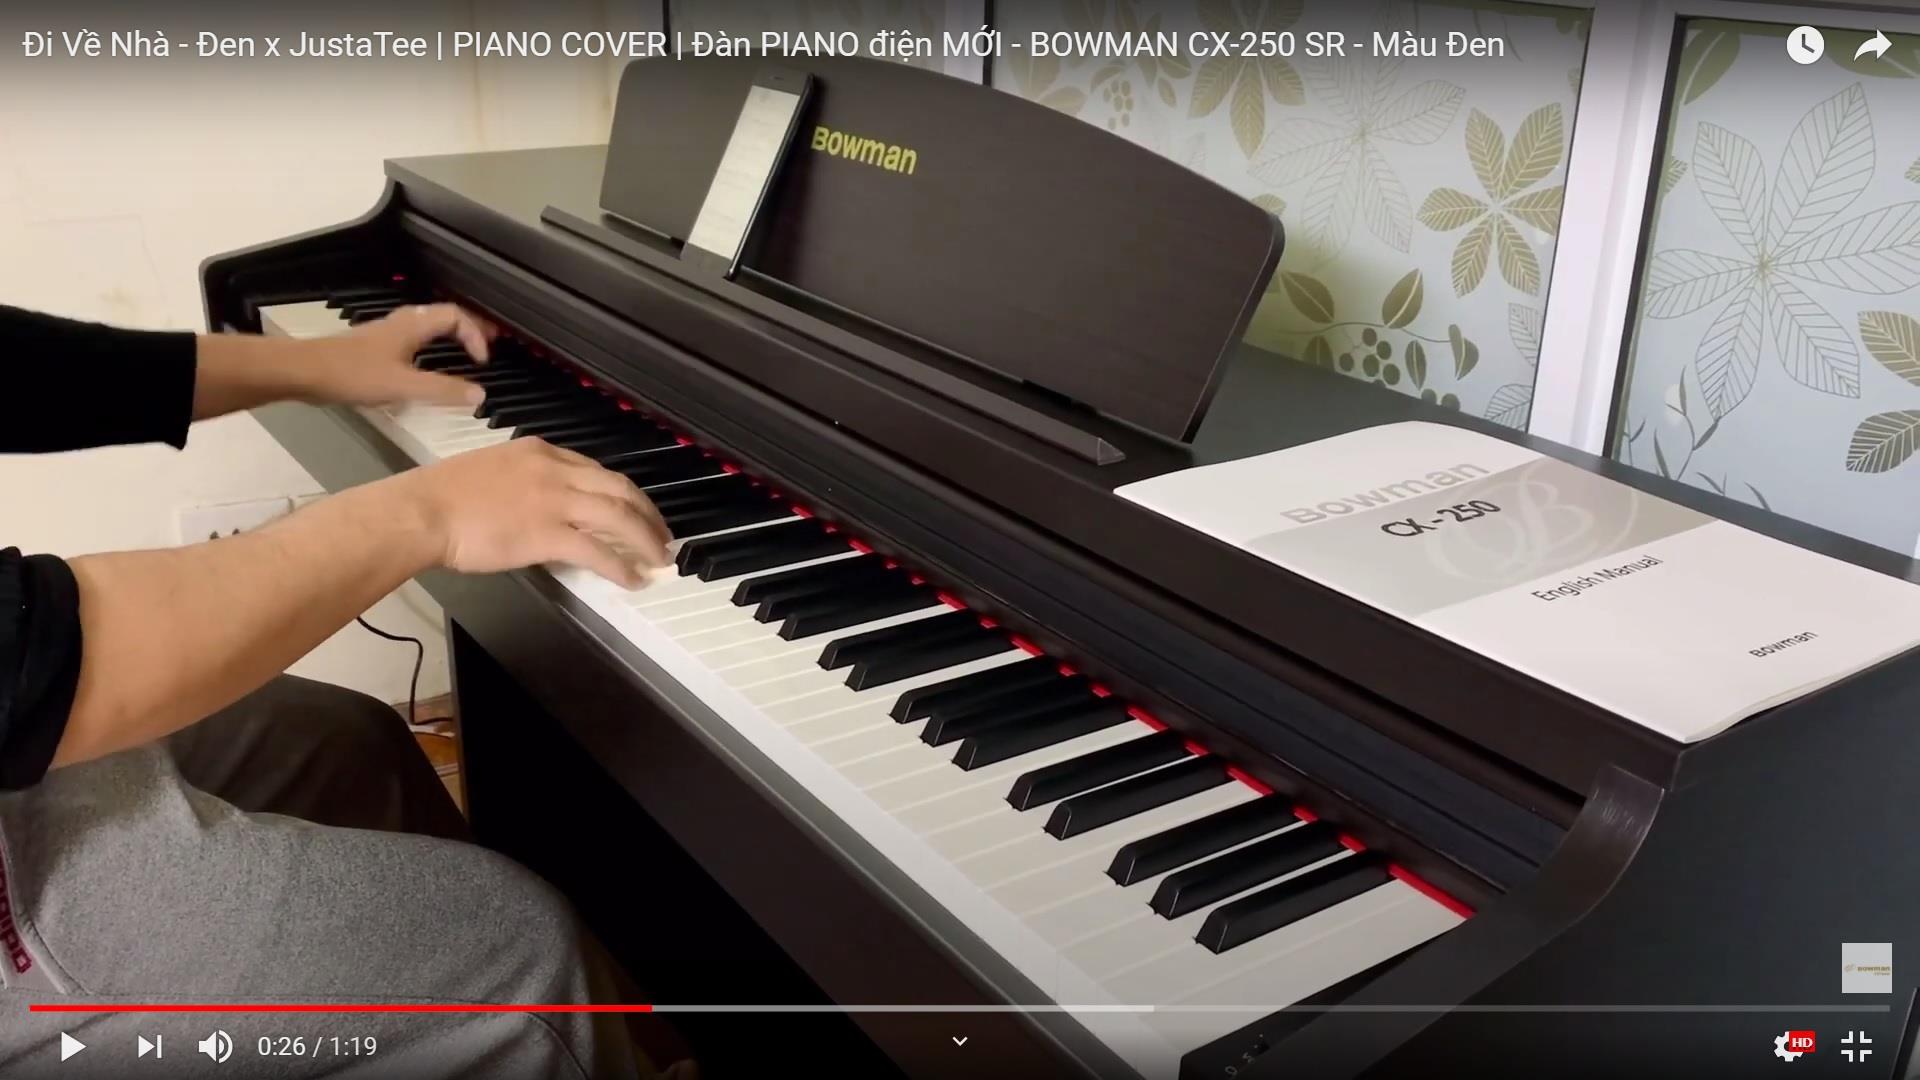 Đi Về Nhà - Đen x JustaTee | PIANO COVER | Đàn PIANO điện MỚI - BOWMAN CX-250 SR - Màu Đen